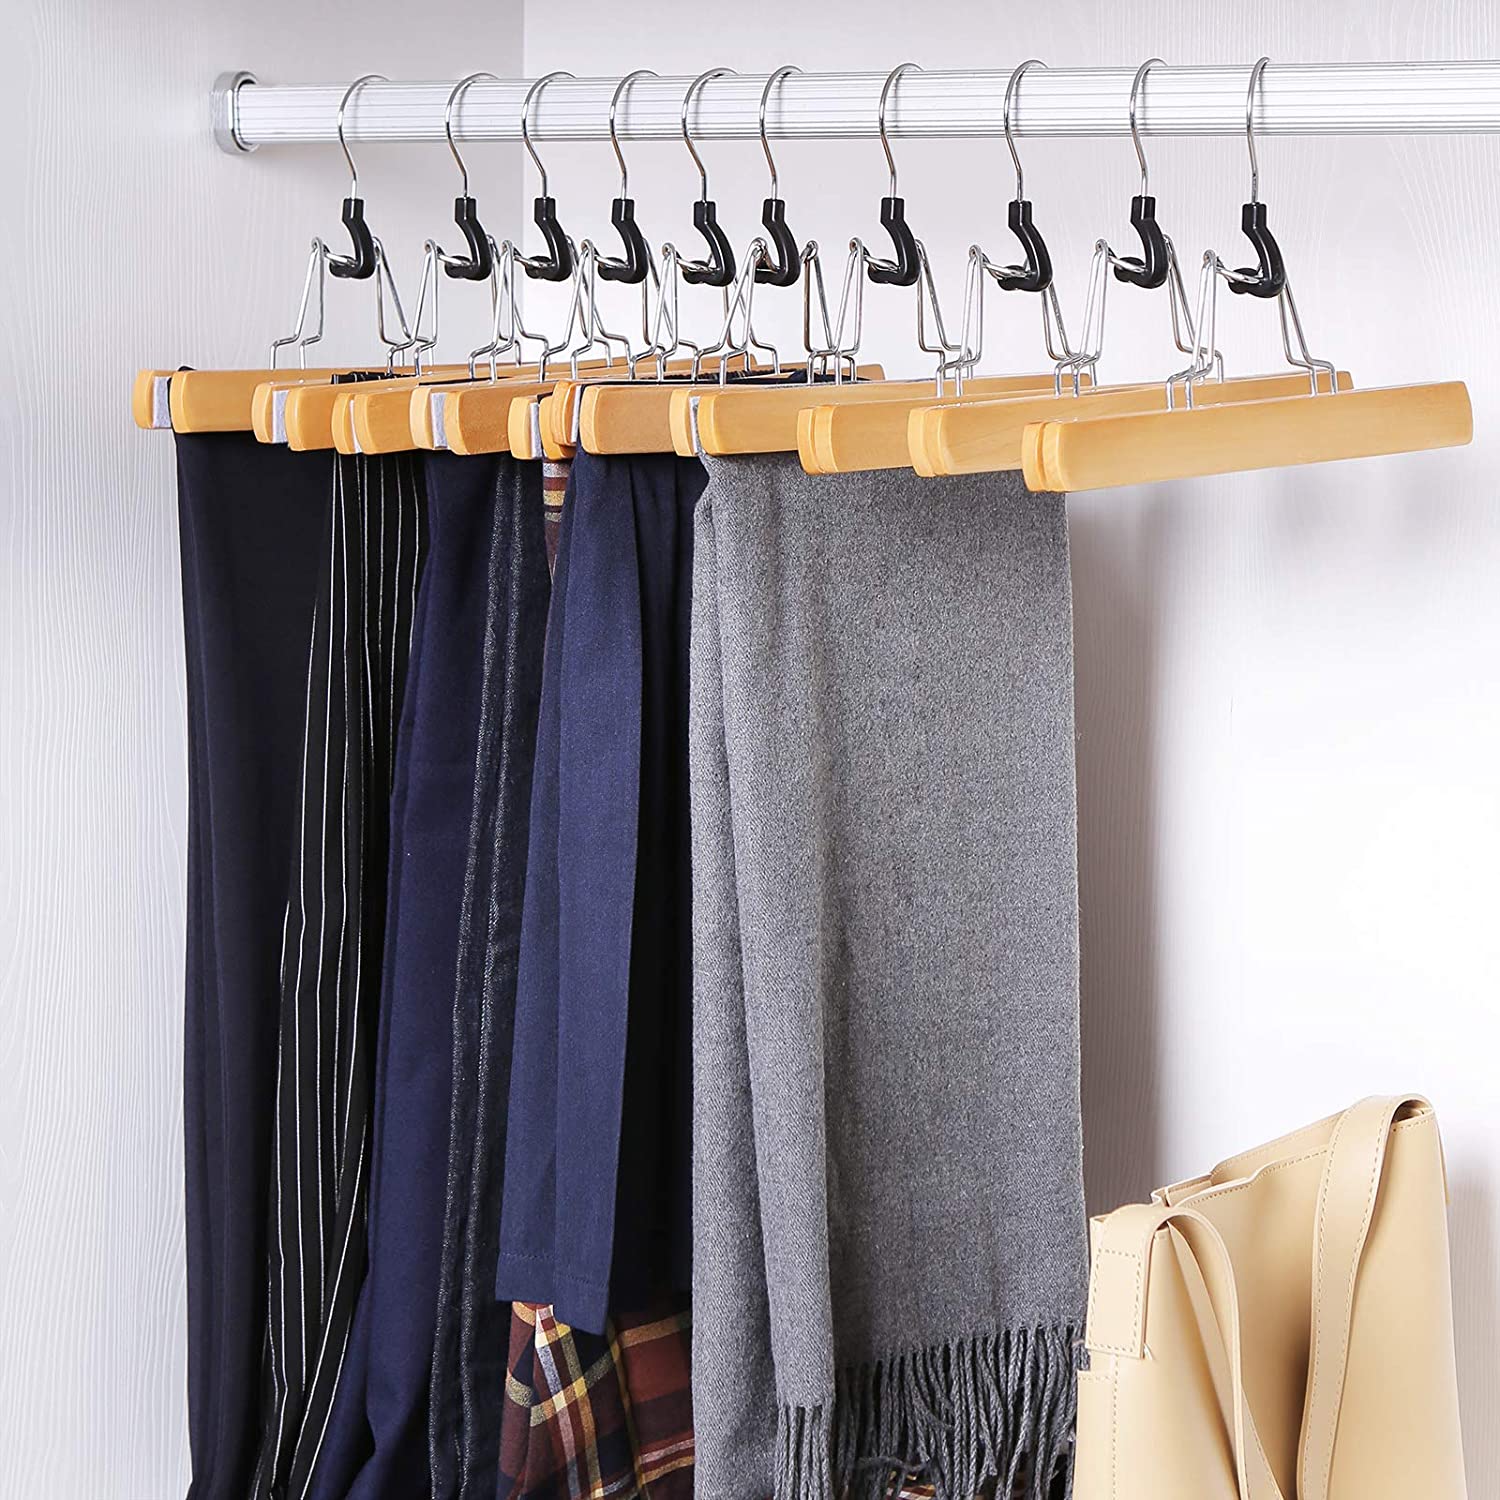 Nancy's Skirt Hanger Set of 10 - Clothes Hanger - Hanger for Trousers